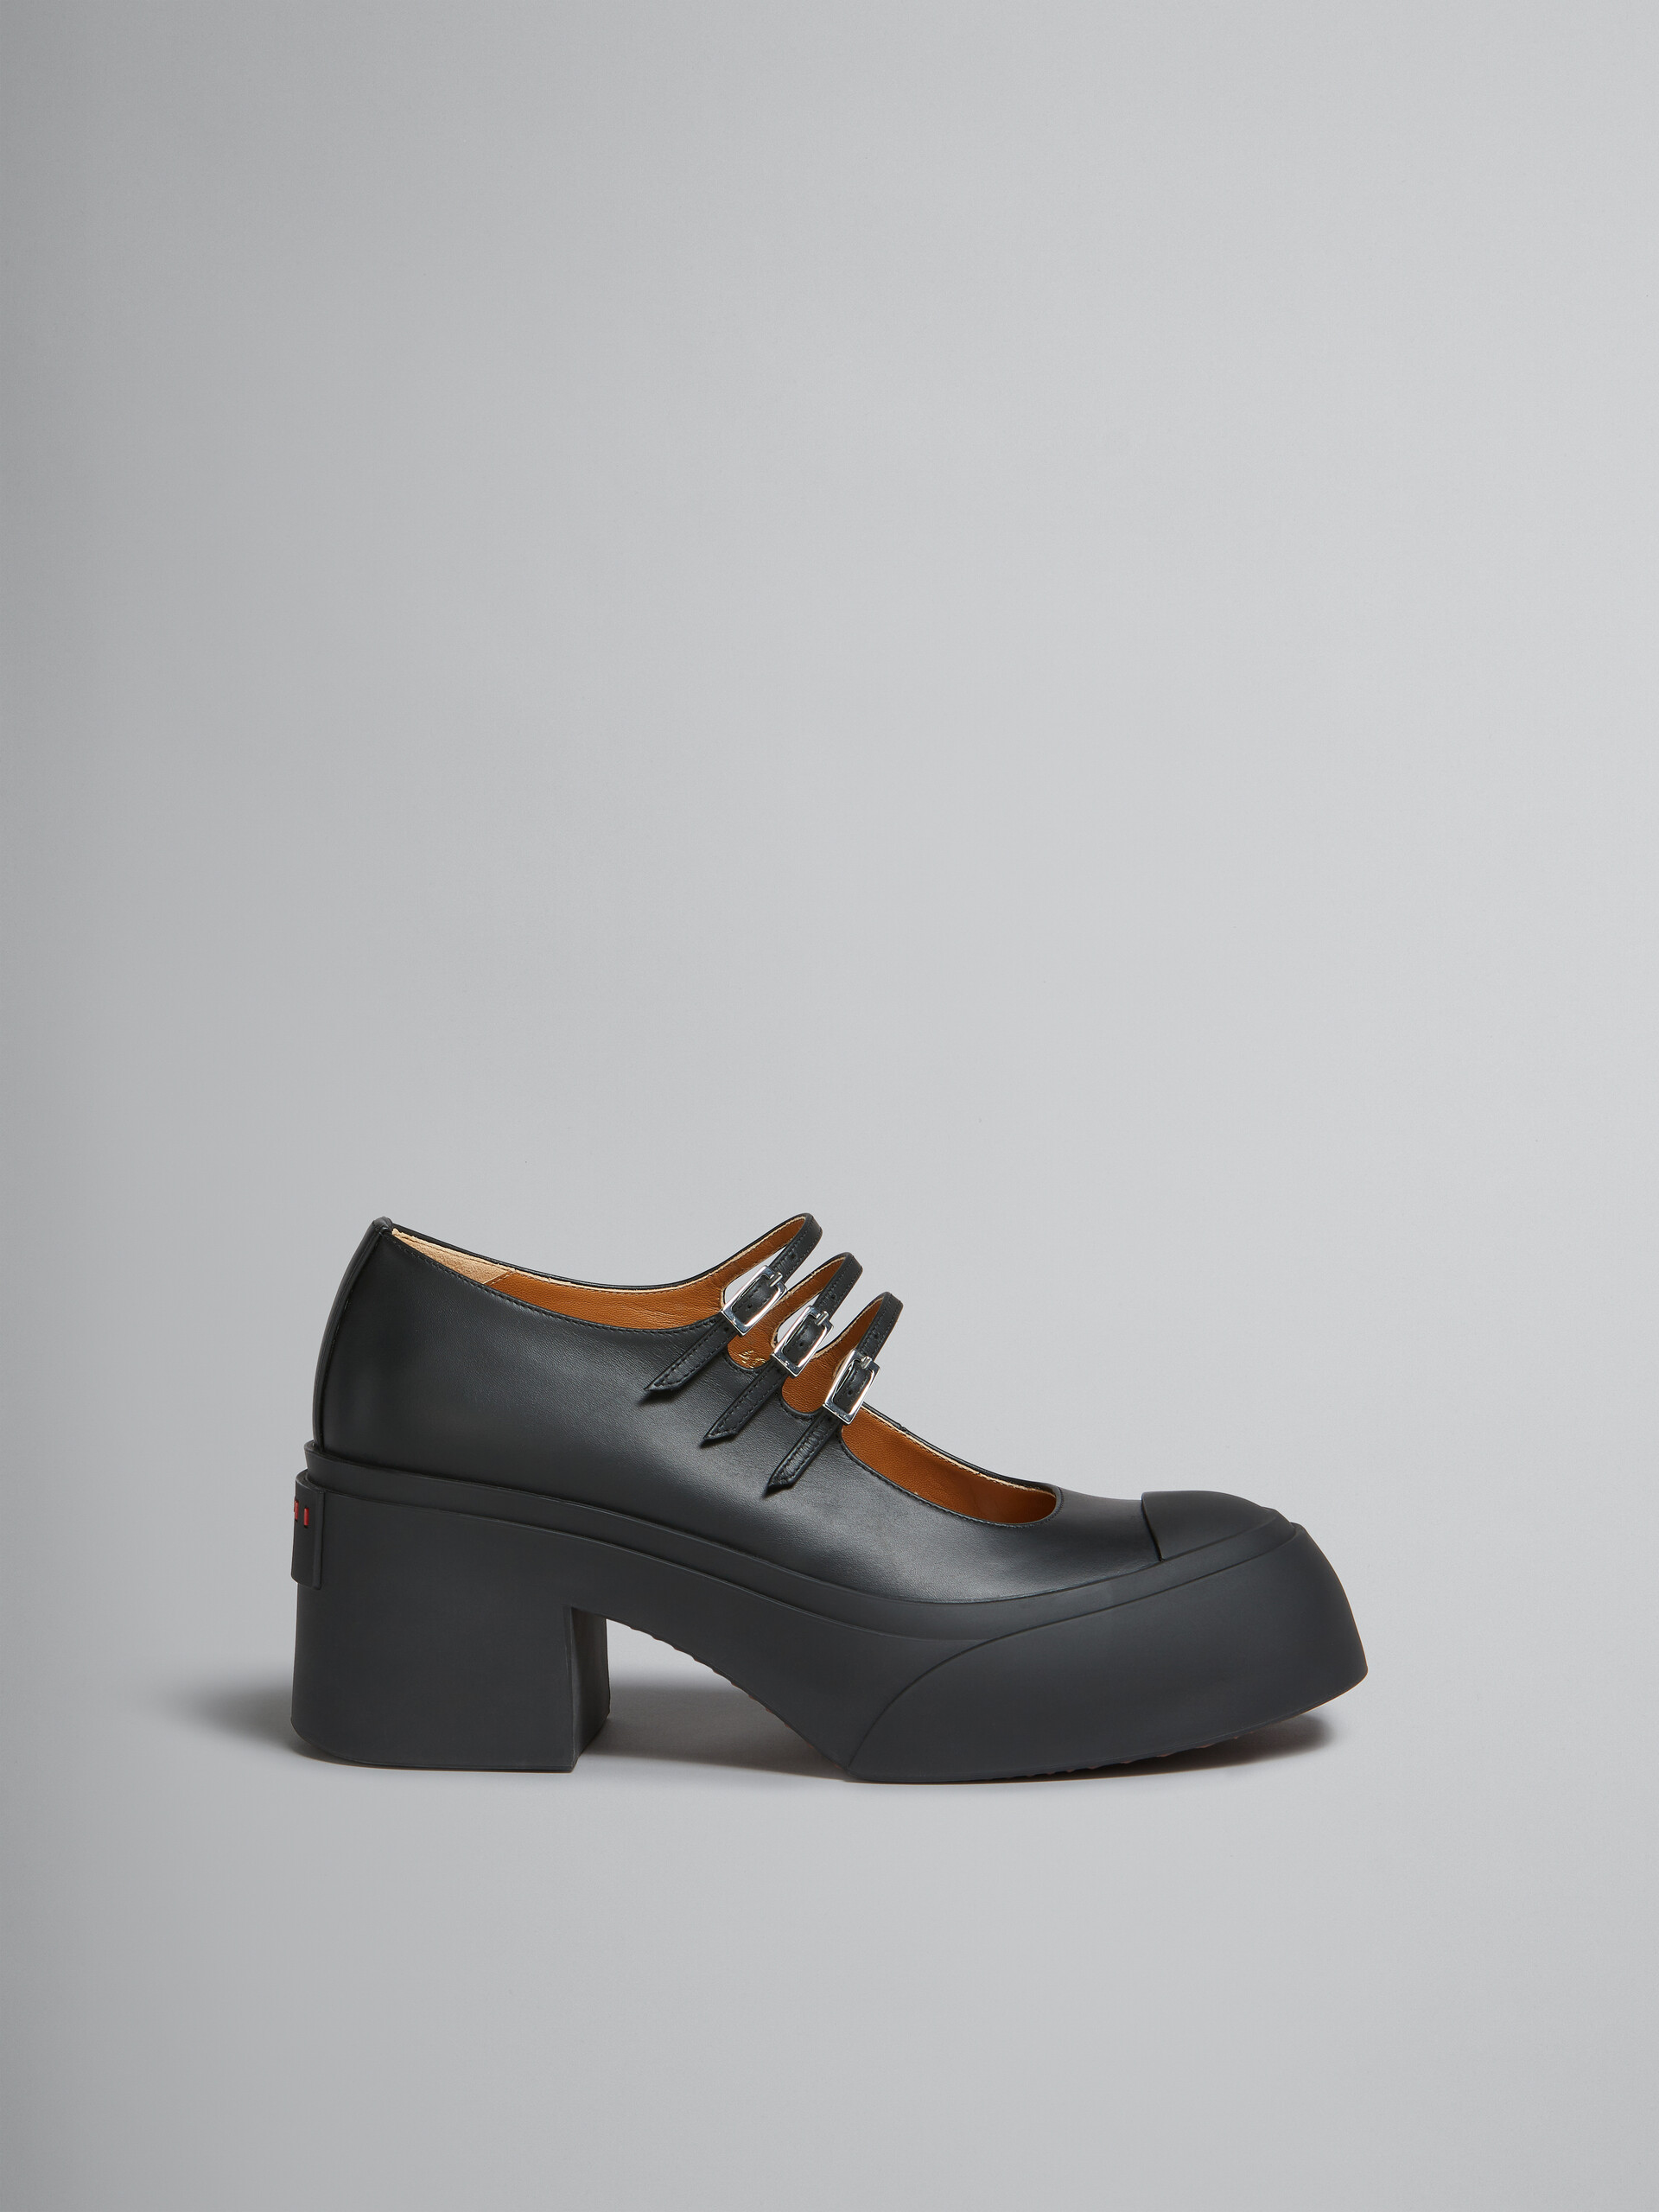 Zapatos Pablo estilo Mary Jane con triple hebilla de piel negra - Sneakers - Image 1